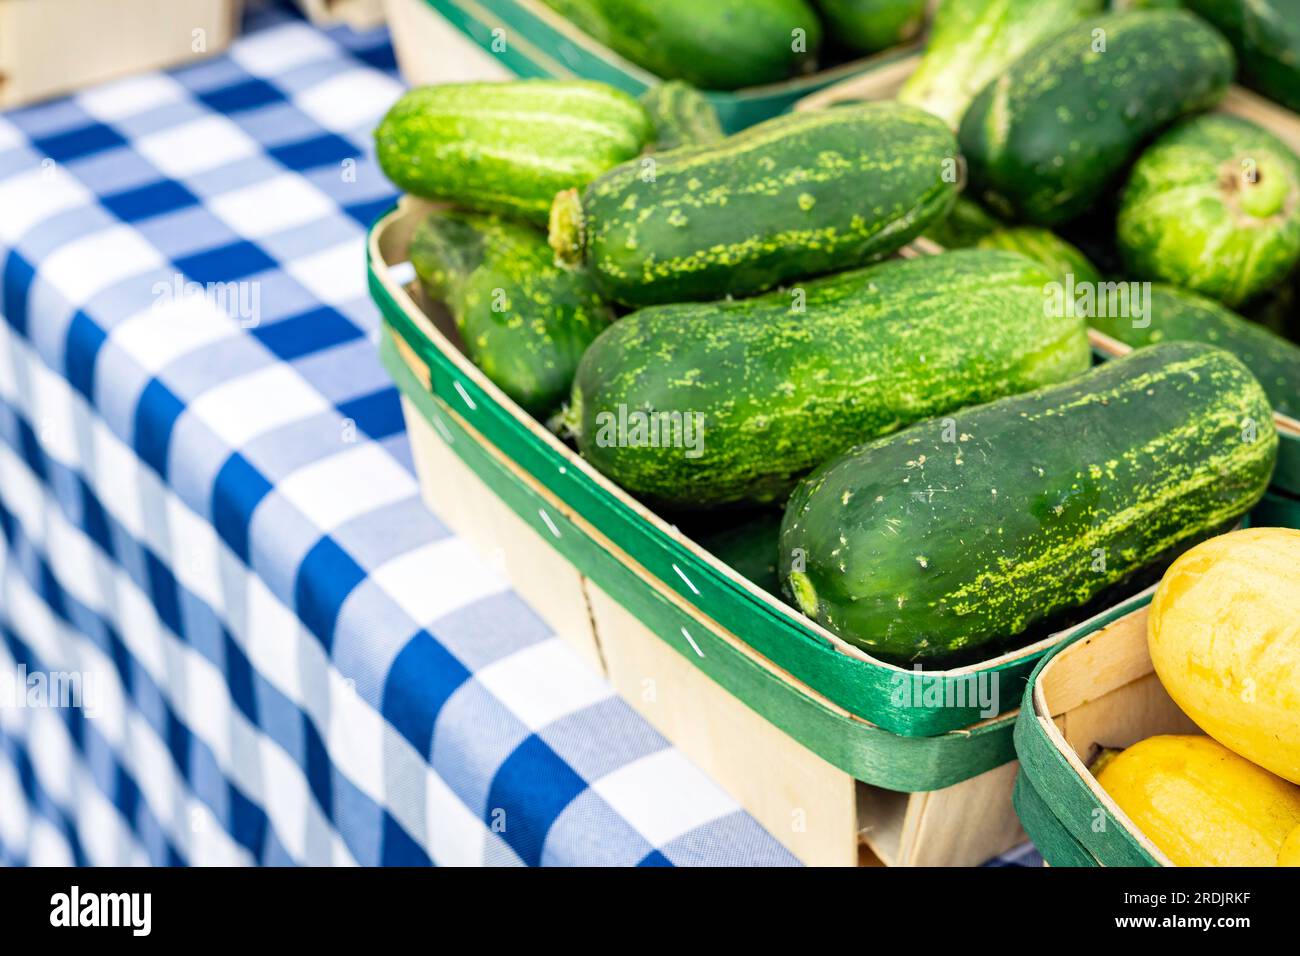 Piccoli cetrioli in un cestino su un tavolo con tovaglia a quadri blu presso un mercato agricolo. Foto Stock